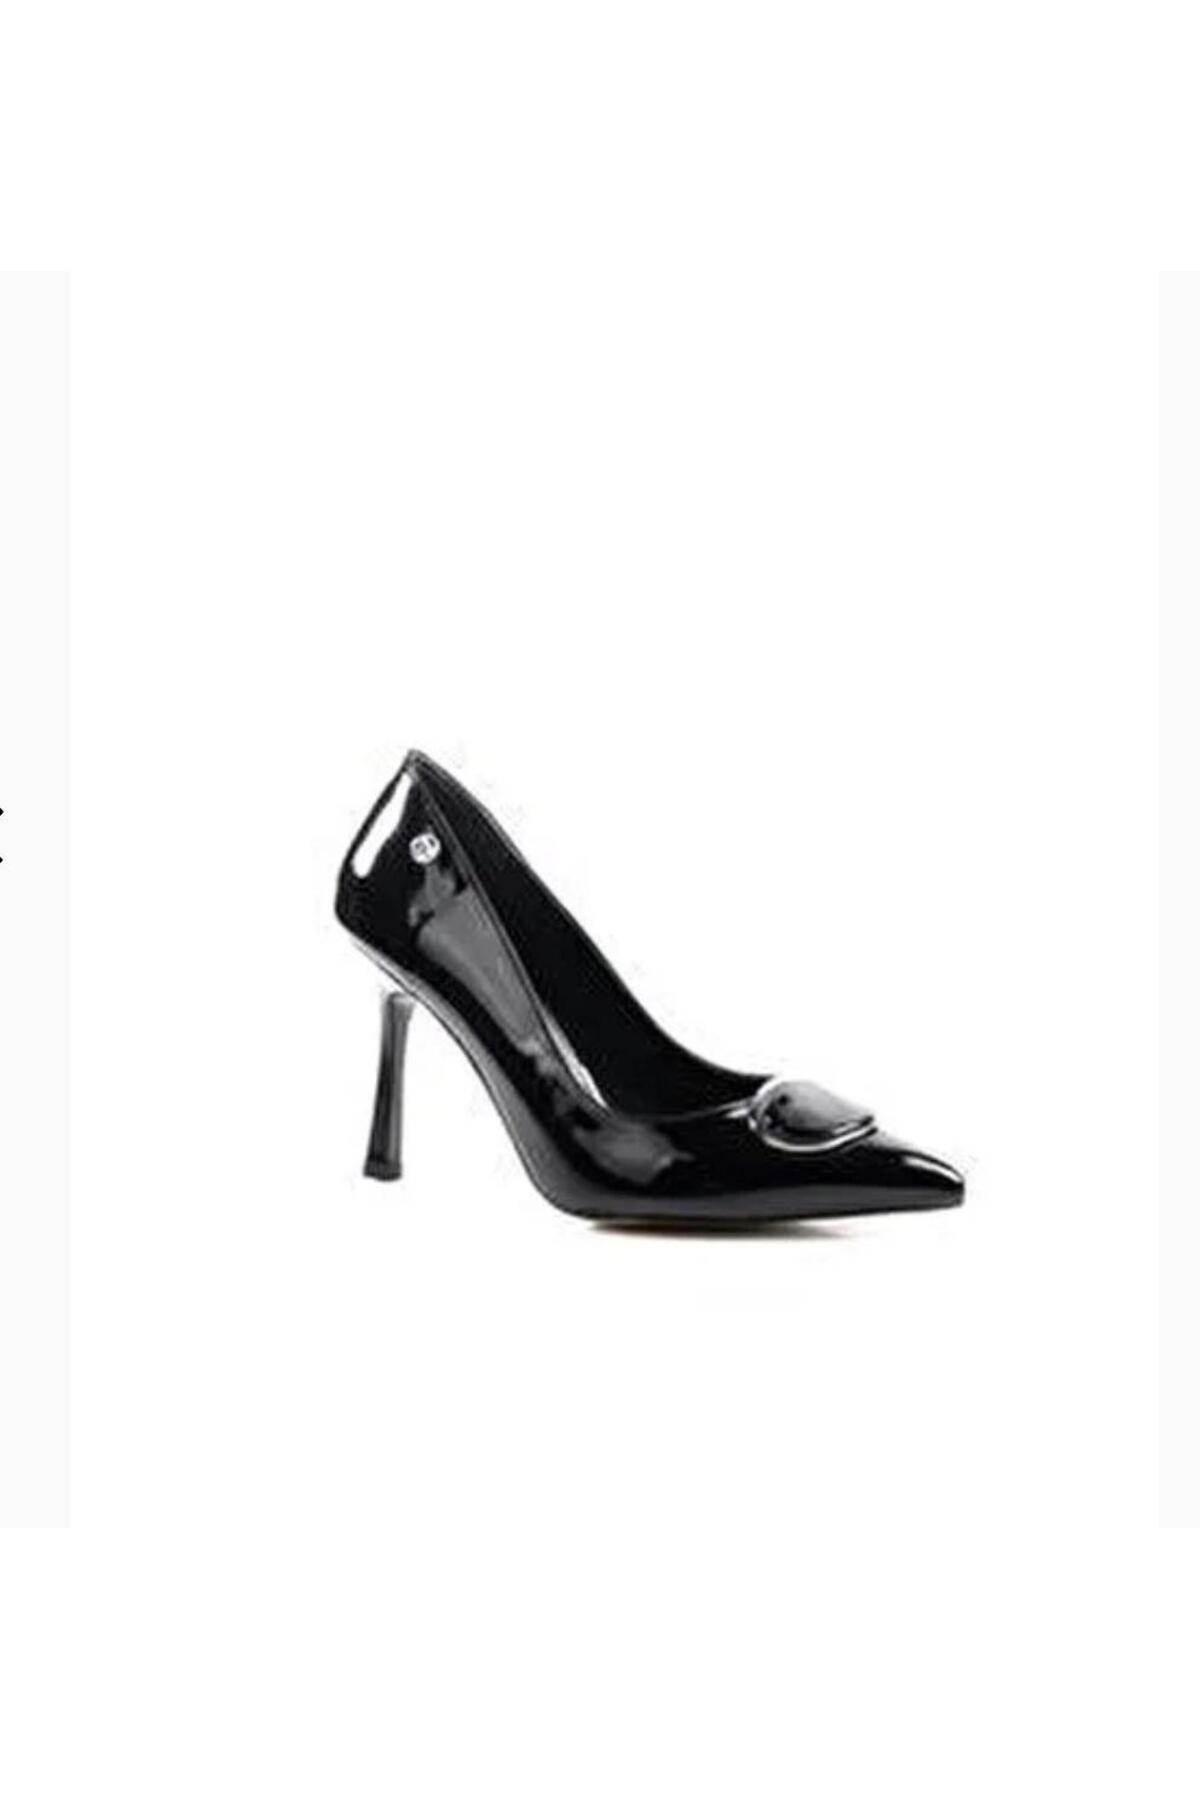 Pierre Cardin PC-52612 9 Cm Kadın Topuklu Stiletto Ayakkabı